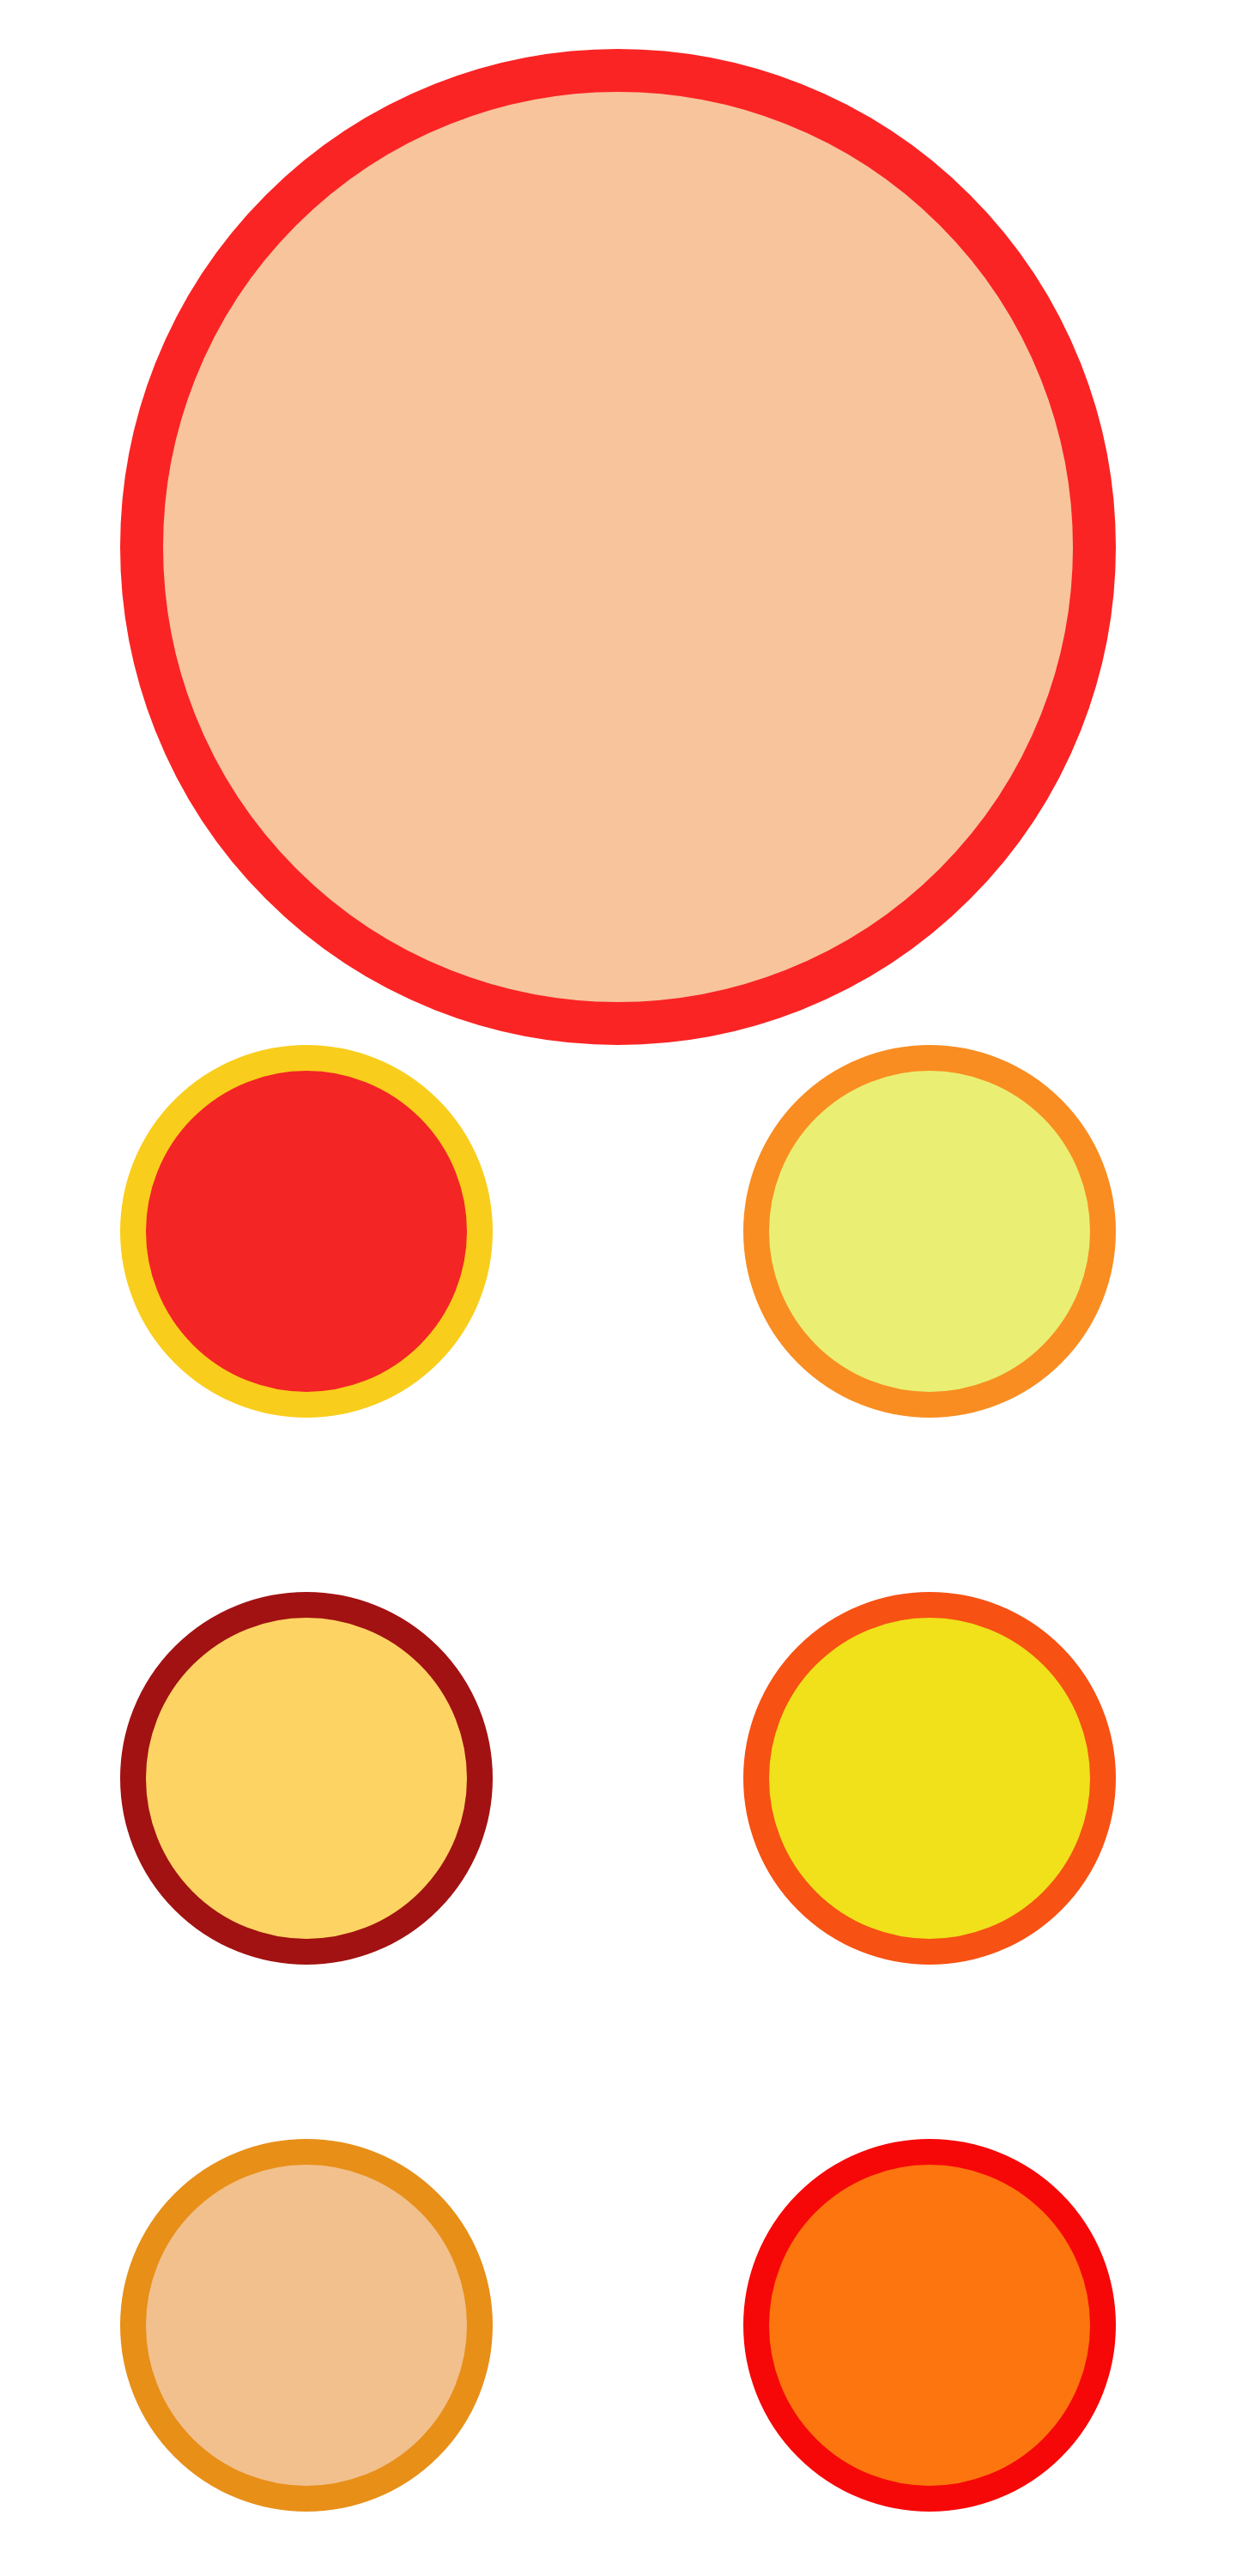 red circles